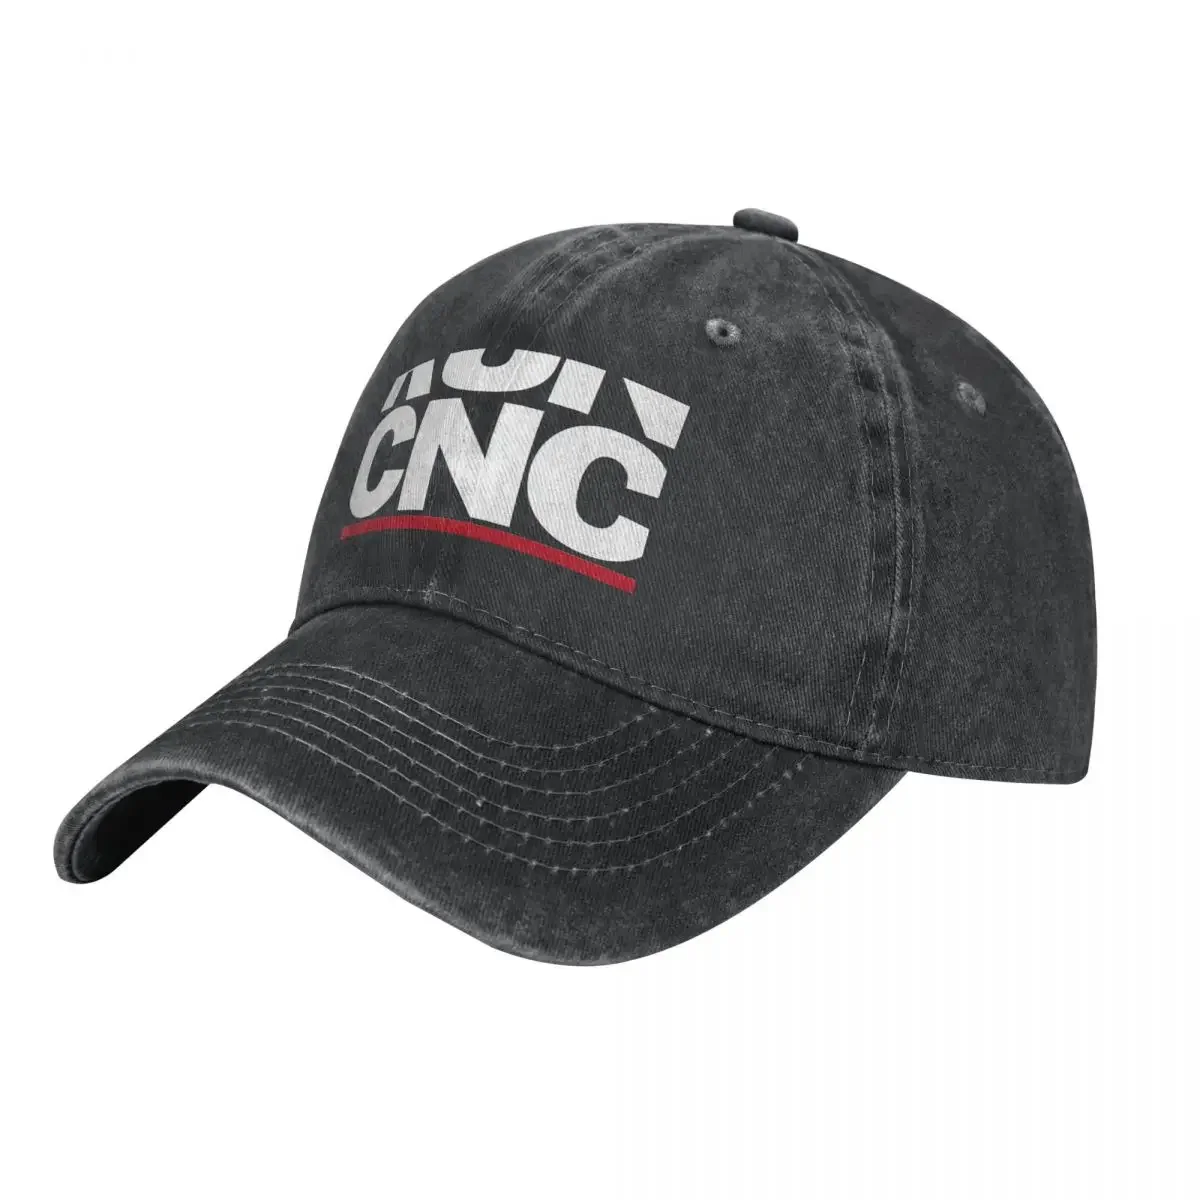 RUN CNC Cowboy Hat Trucker Hat Hat Man Luxury Mens Tennis Women's fashion soft i love my flag of missouri heart hat gift dad hat trucker hat cowboy hat